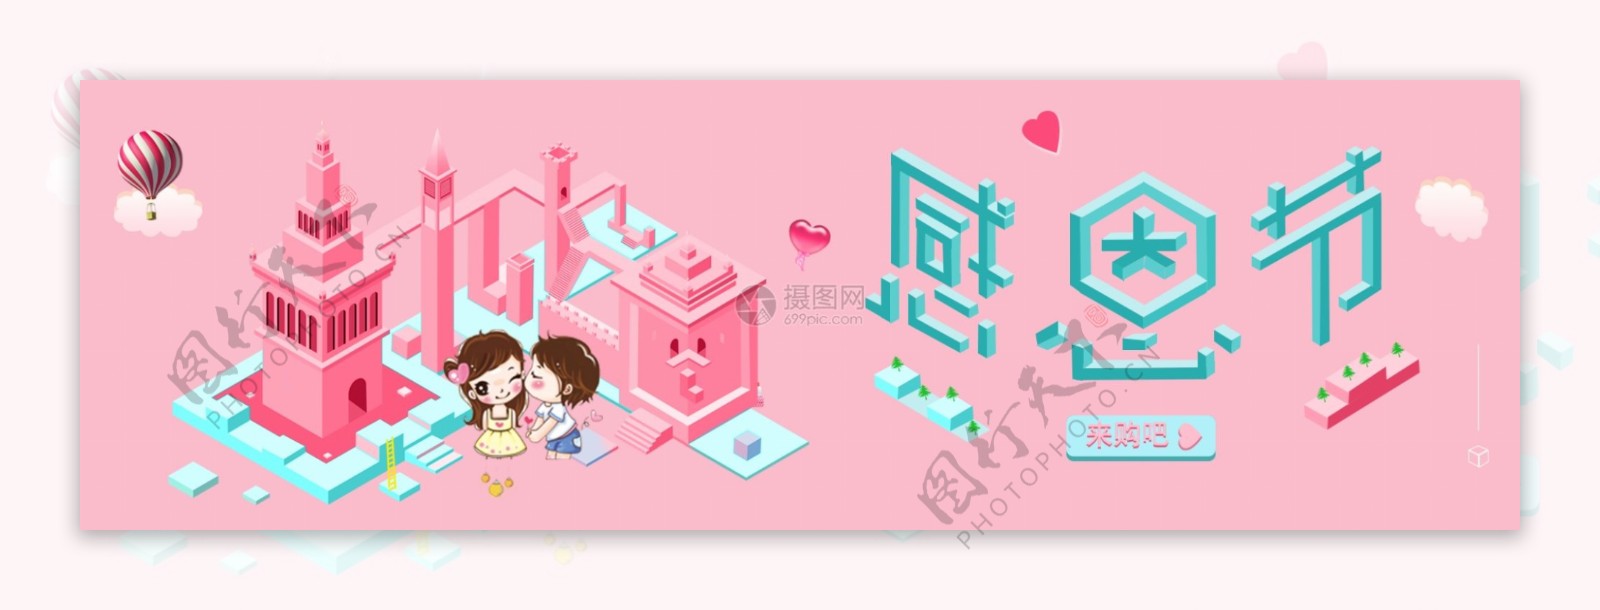 粉色立体感恩节淘宝banner